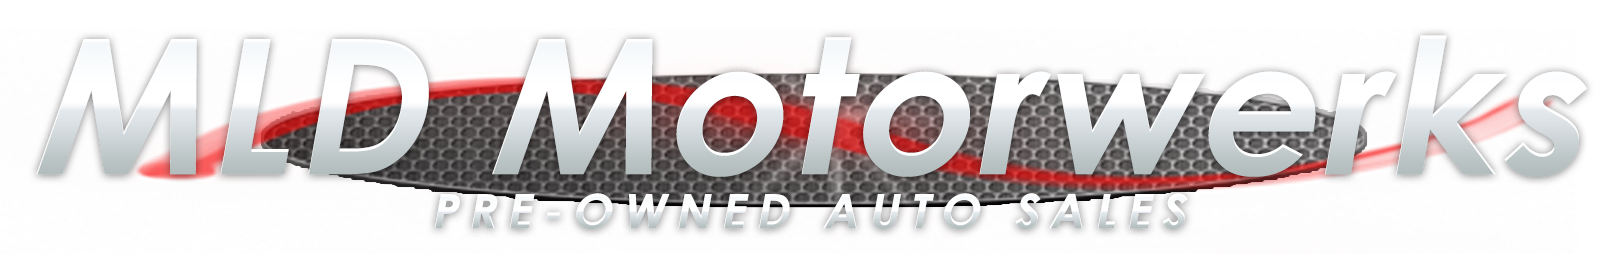 MLD Motorwerks Pre-Owned Auto Sales - MLD Motorwerks, LLC